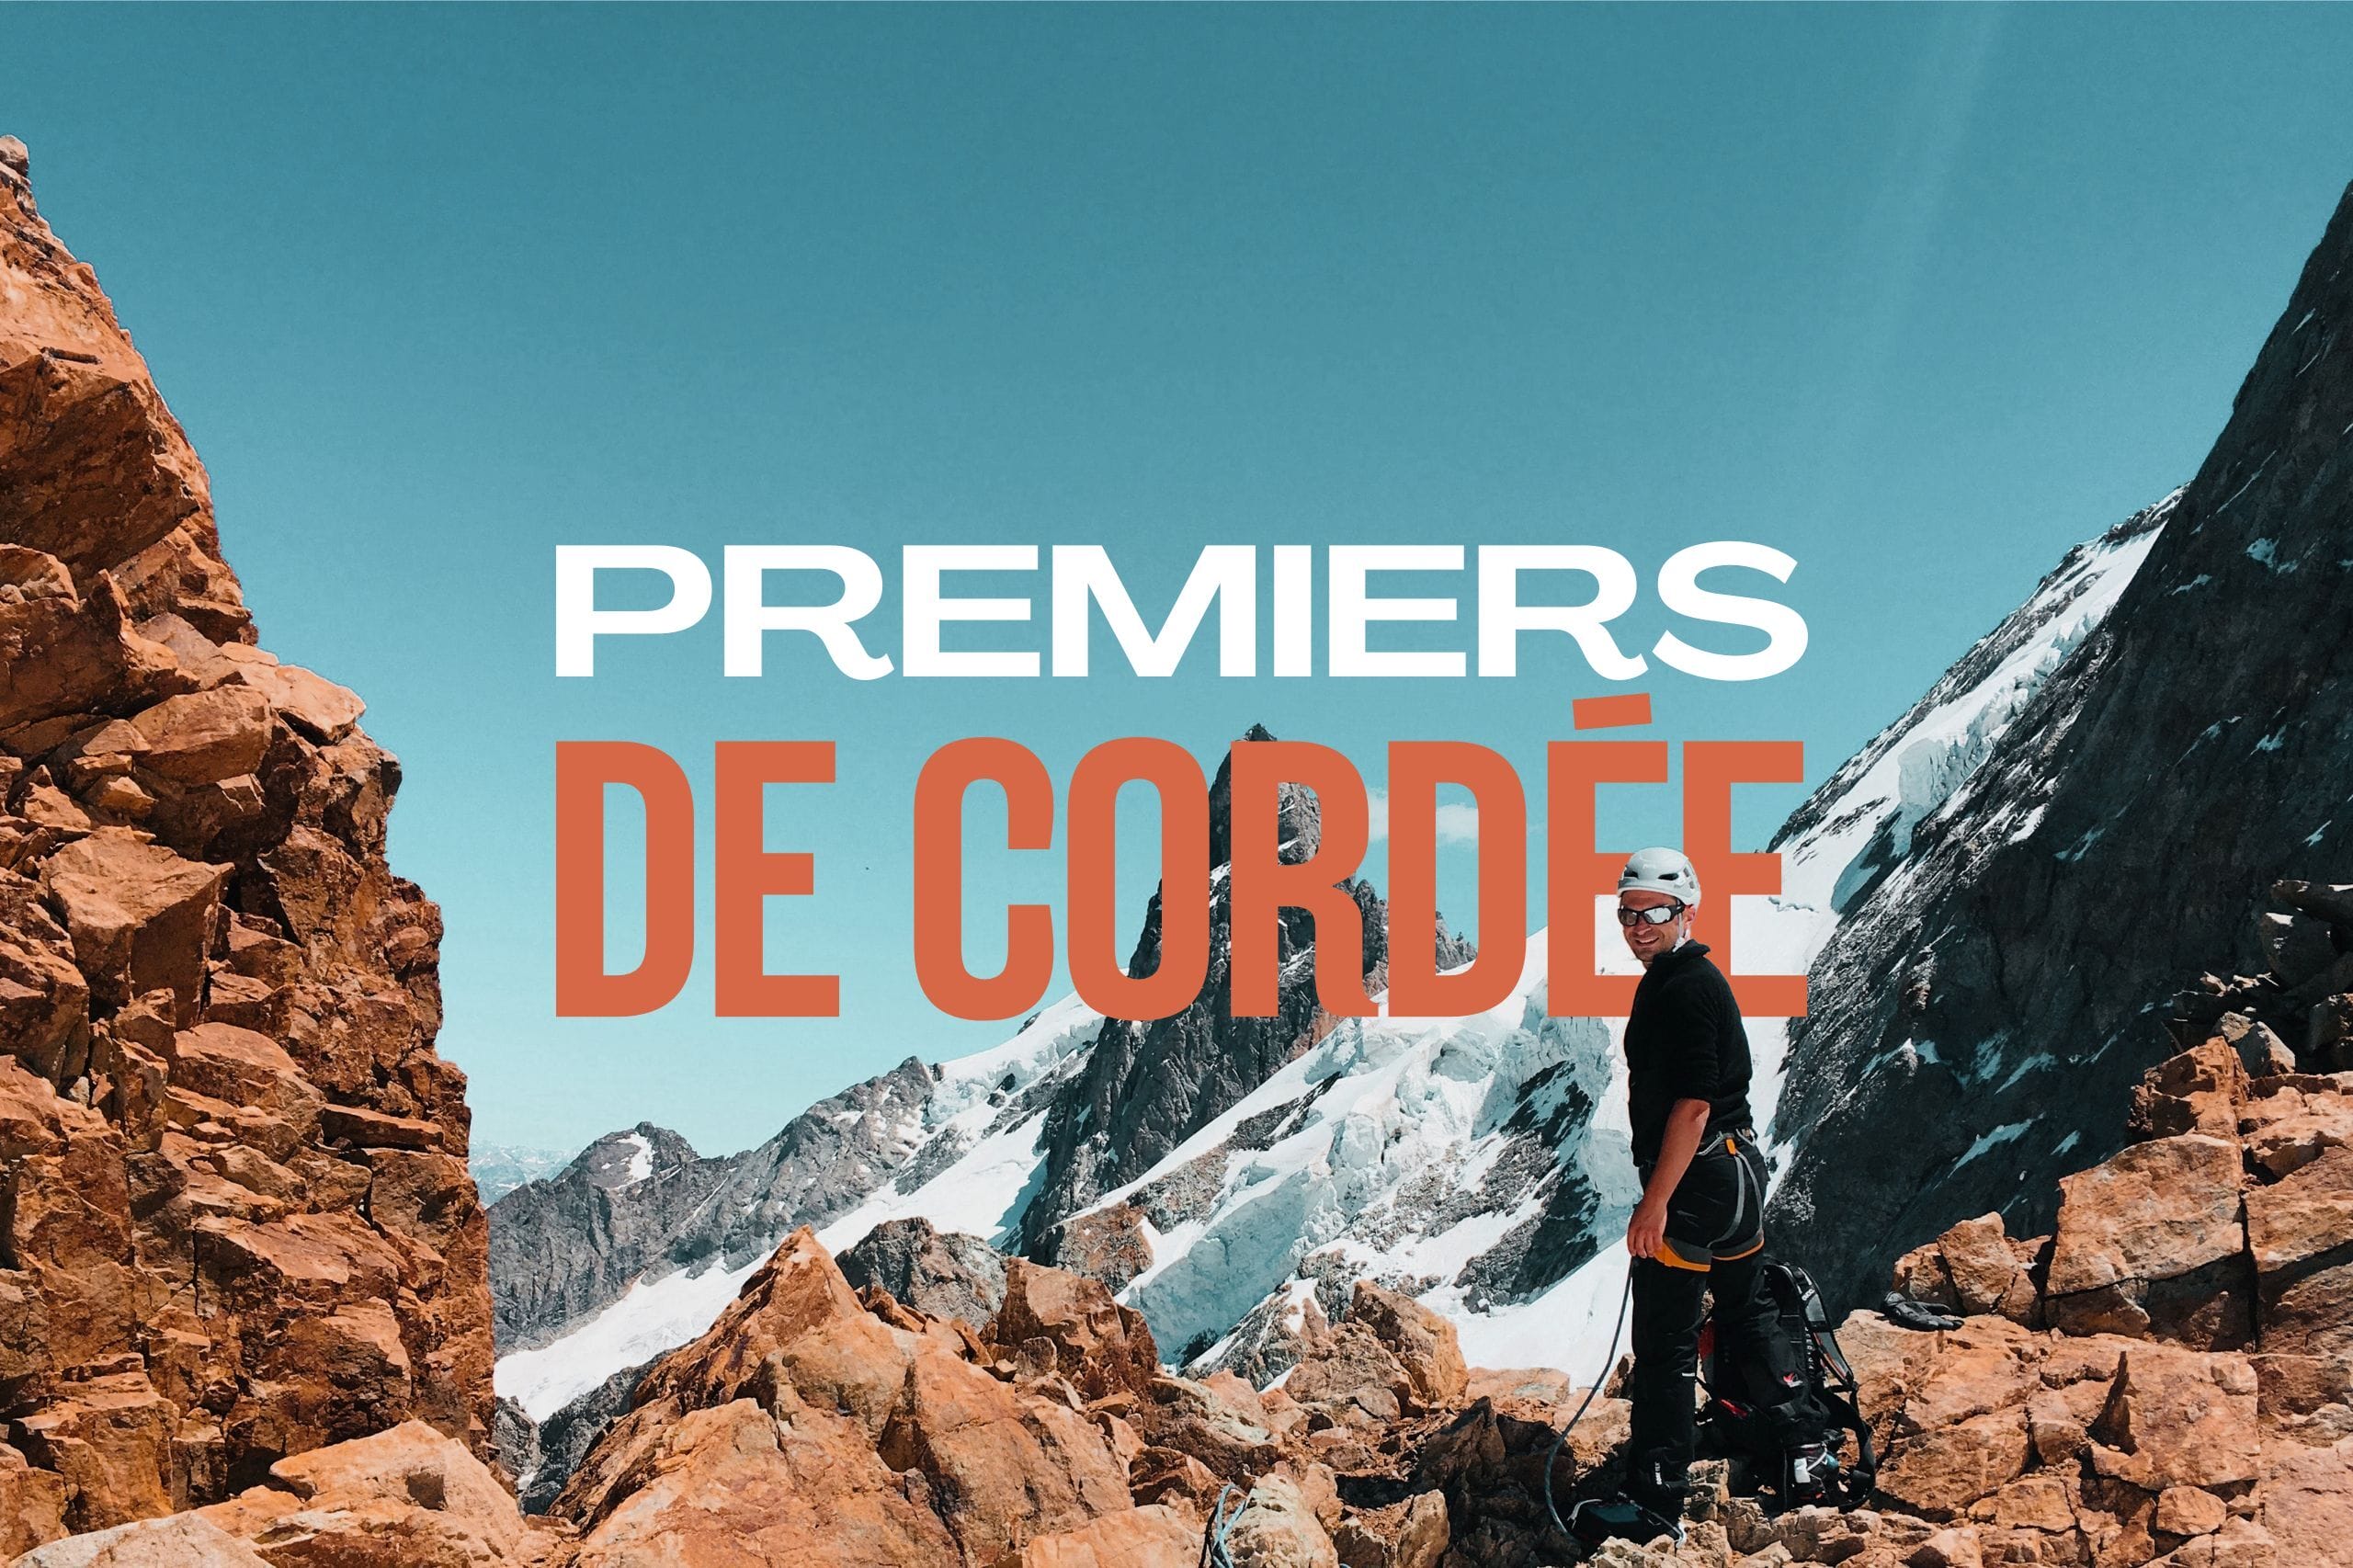 PREMIER DE CORDEE : Week-end alpinisme : stage d'initiation dans les Écrins